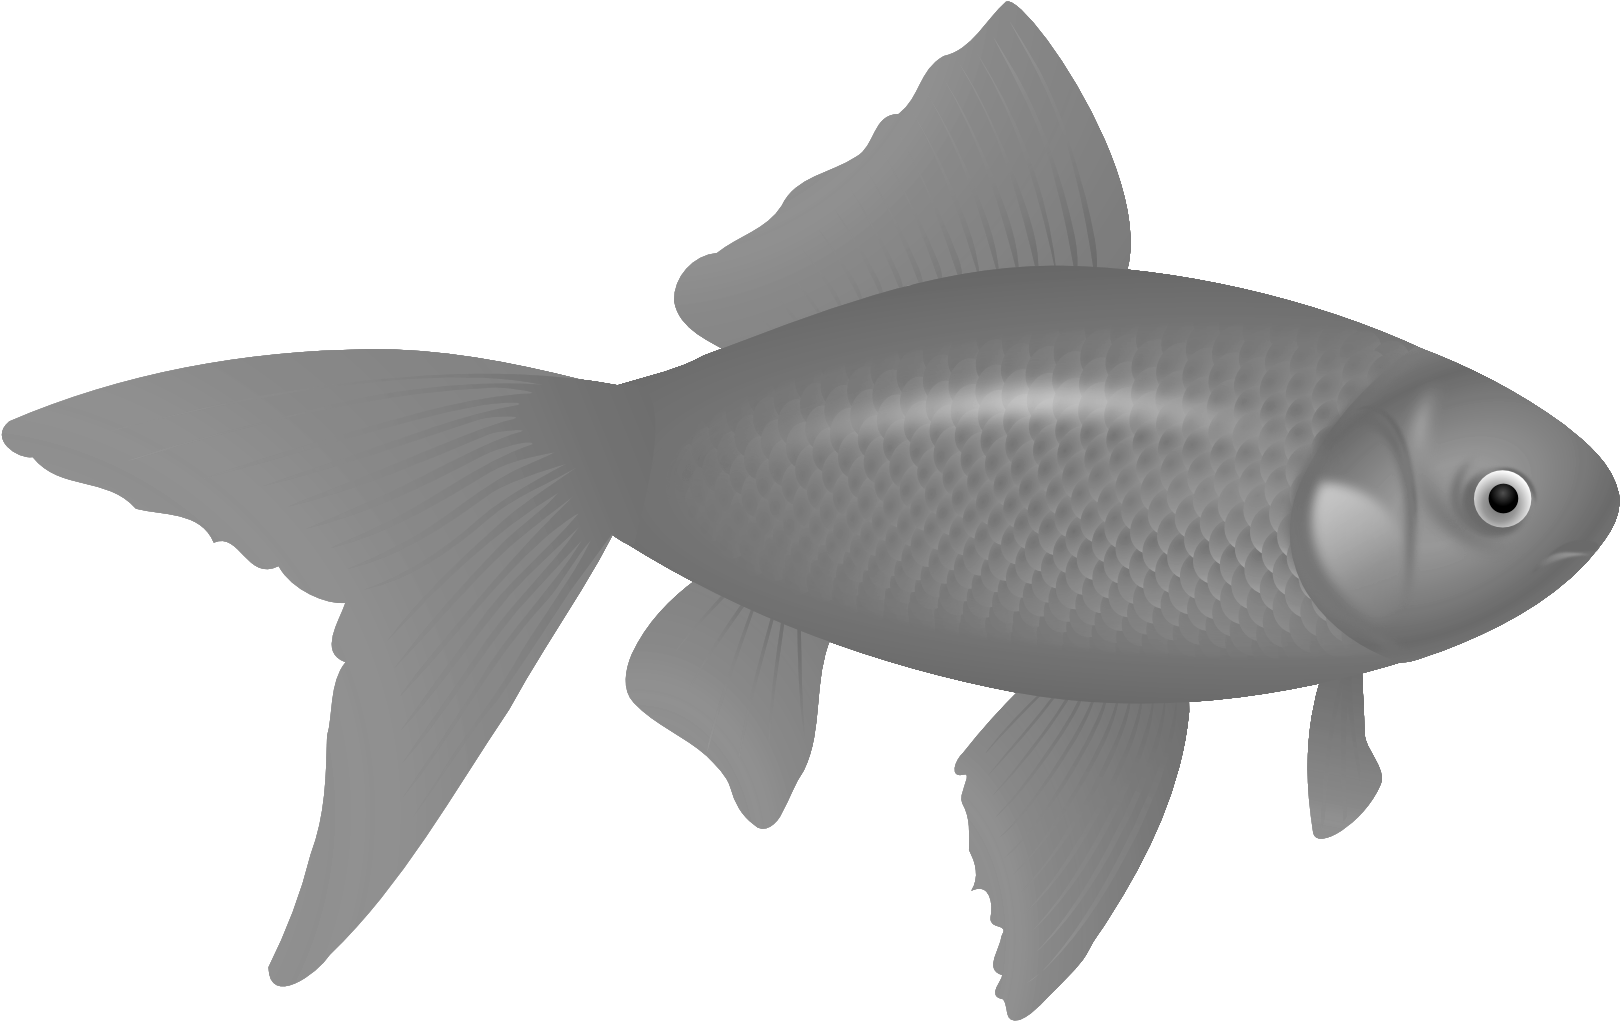 Fish Nine - Transparent Background Logo Png (1969x1307), Png Download